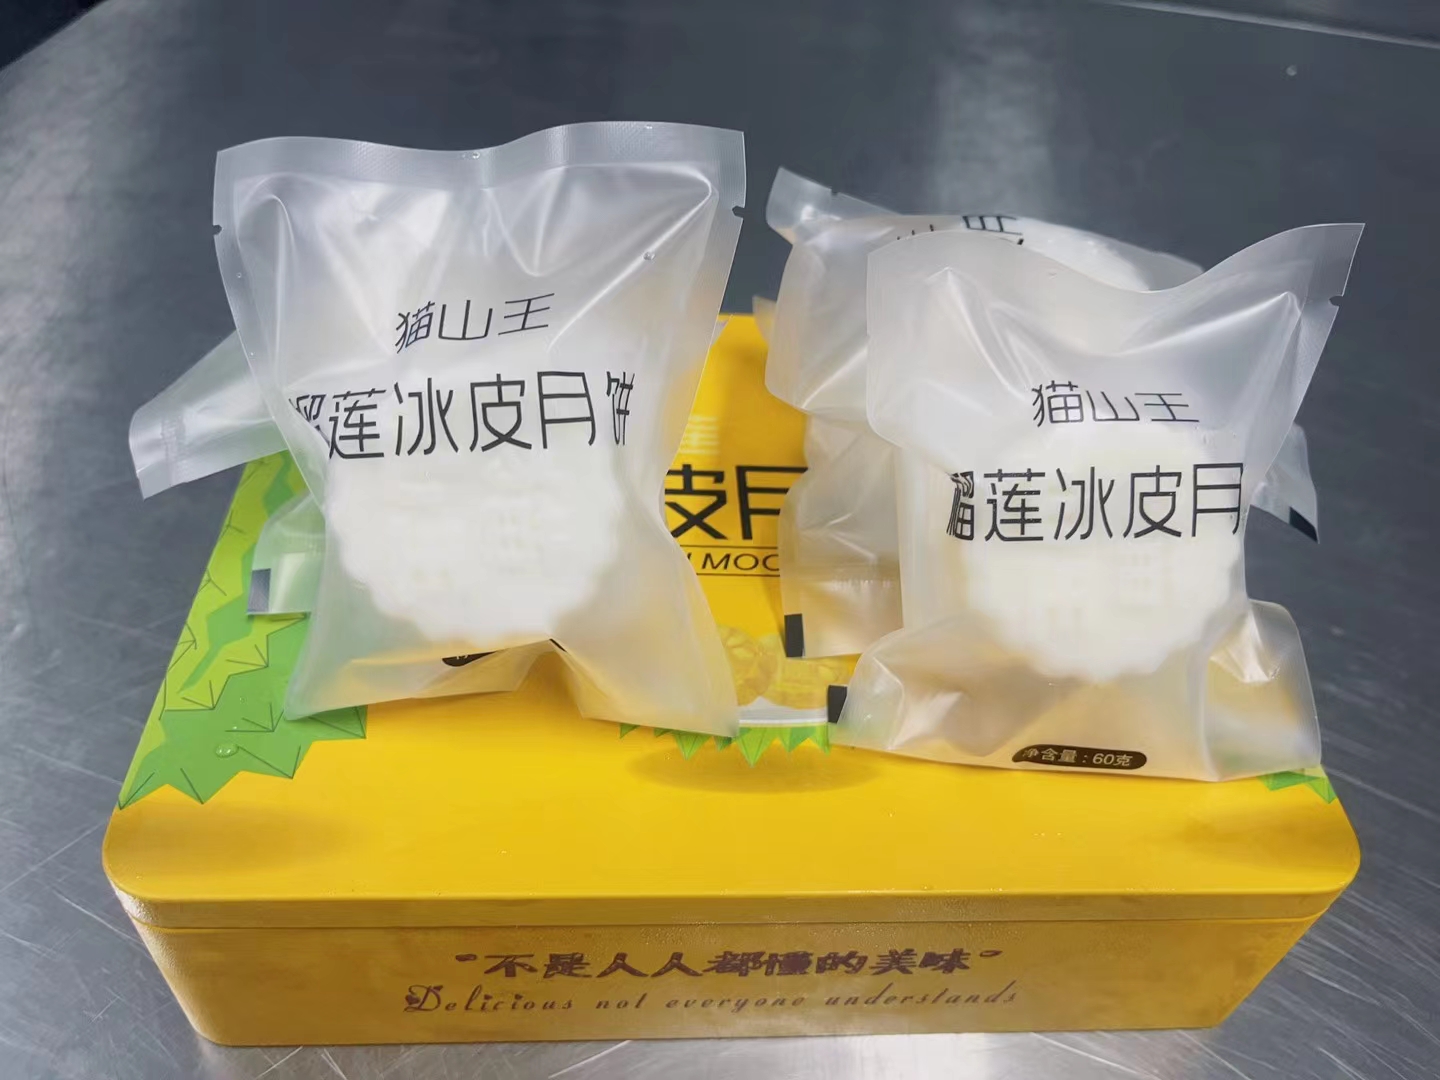 青岛5A品质猫山王榴莲冰皮月饼 产地工厂供应链 支持电商一件代发